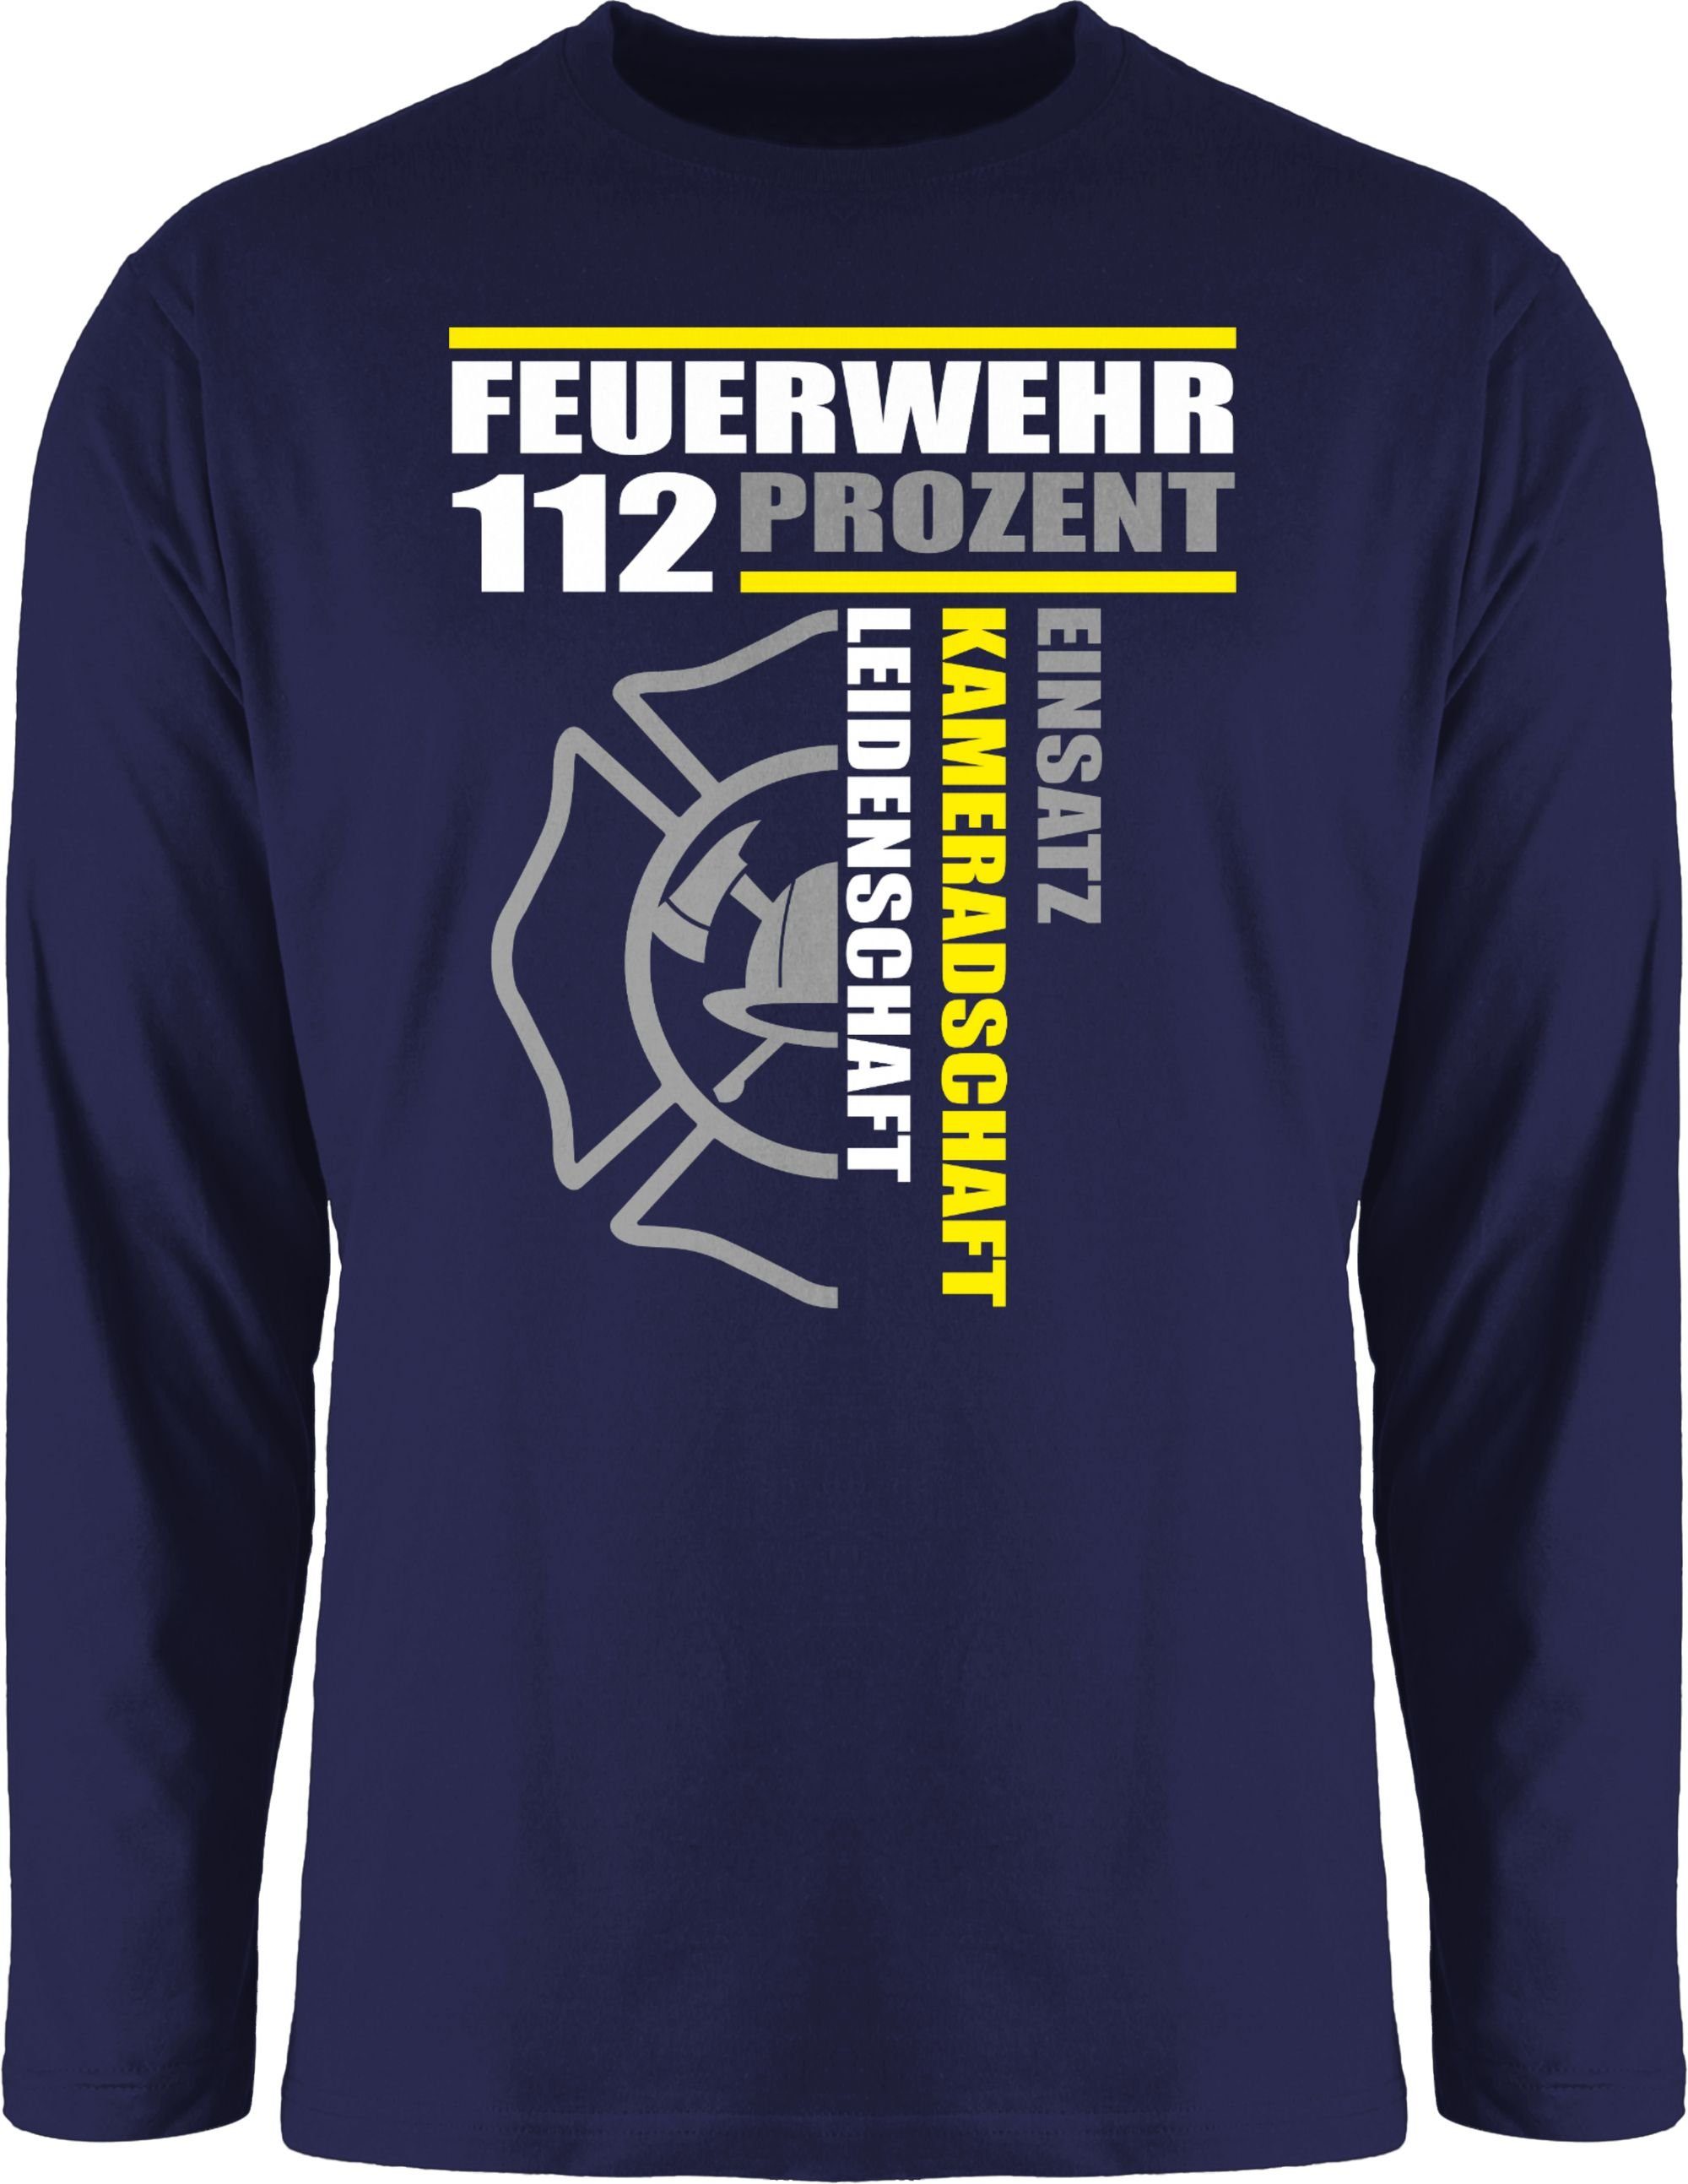 Shirtracer Rundhalsshirt Feuerwehr 112 Prozent - Einsatz Kameradschaft Leidenschaft - Freiwilli Feuerwehr 1 Navy Blau